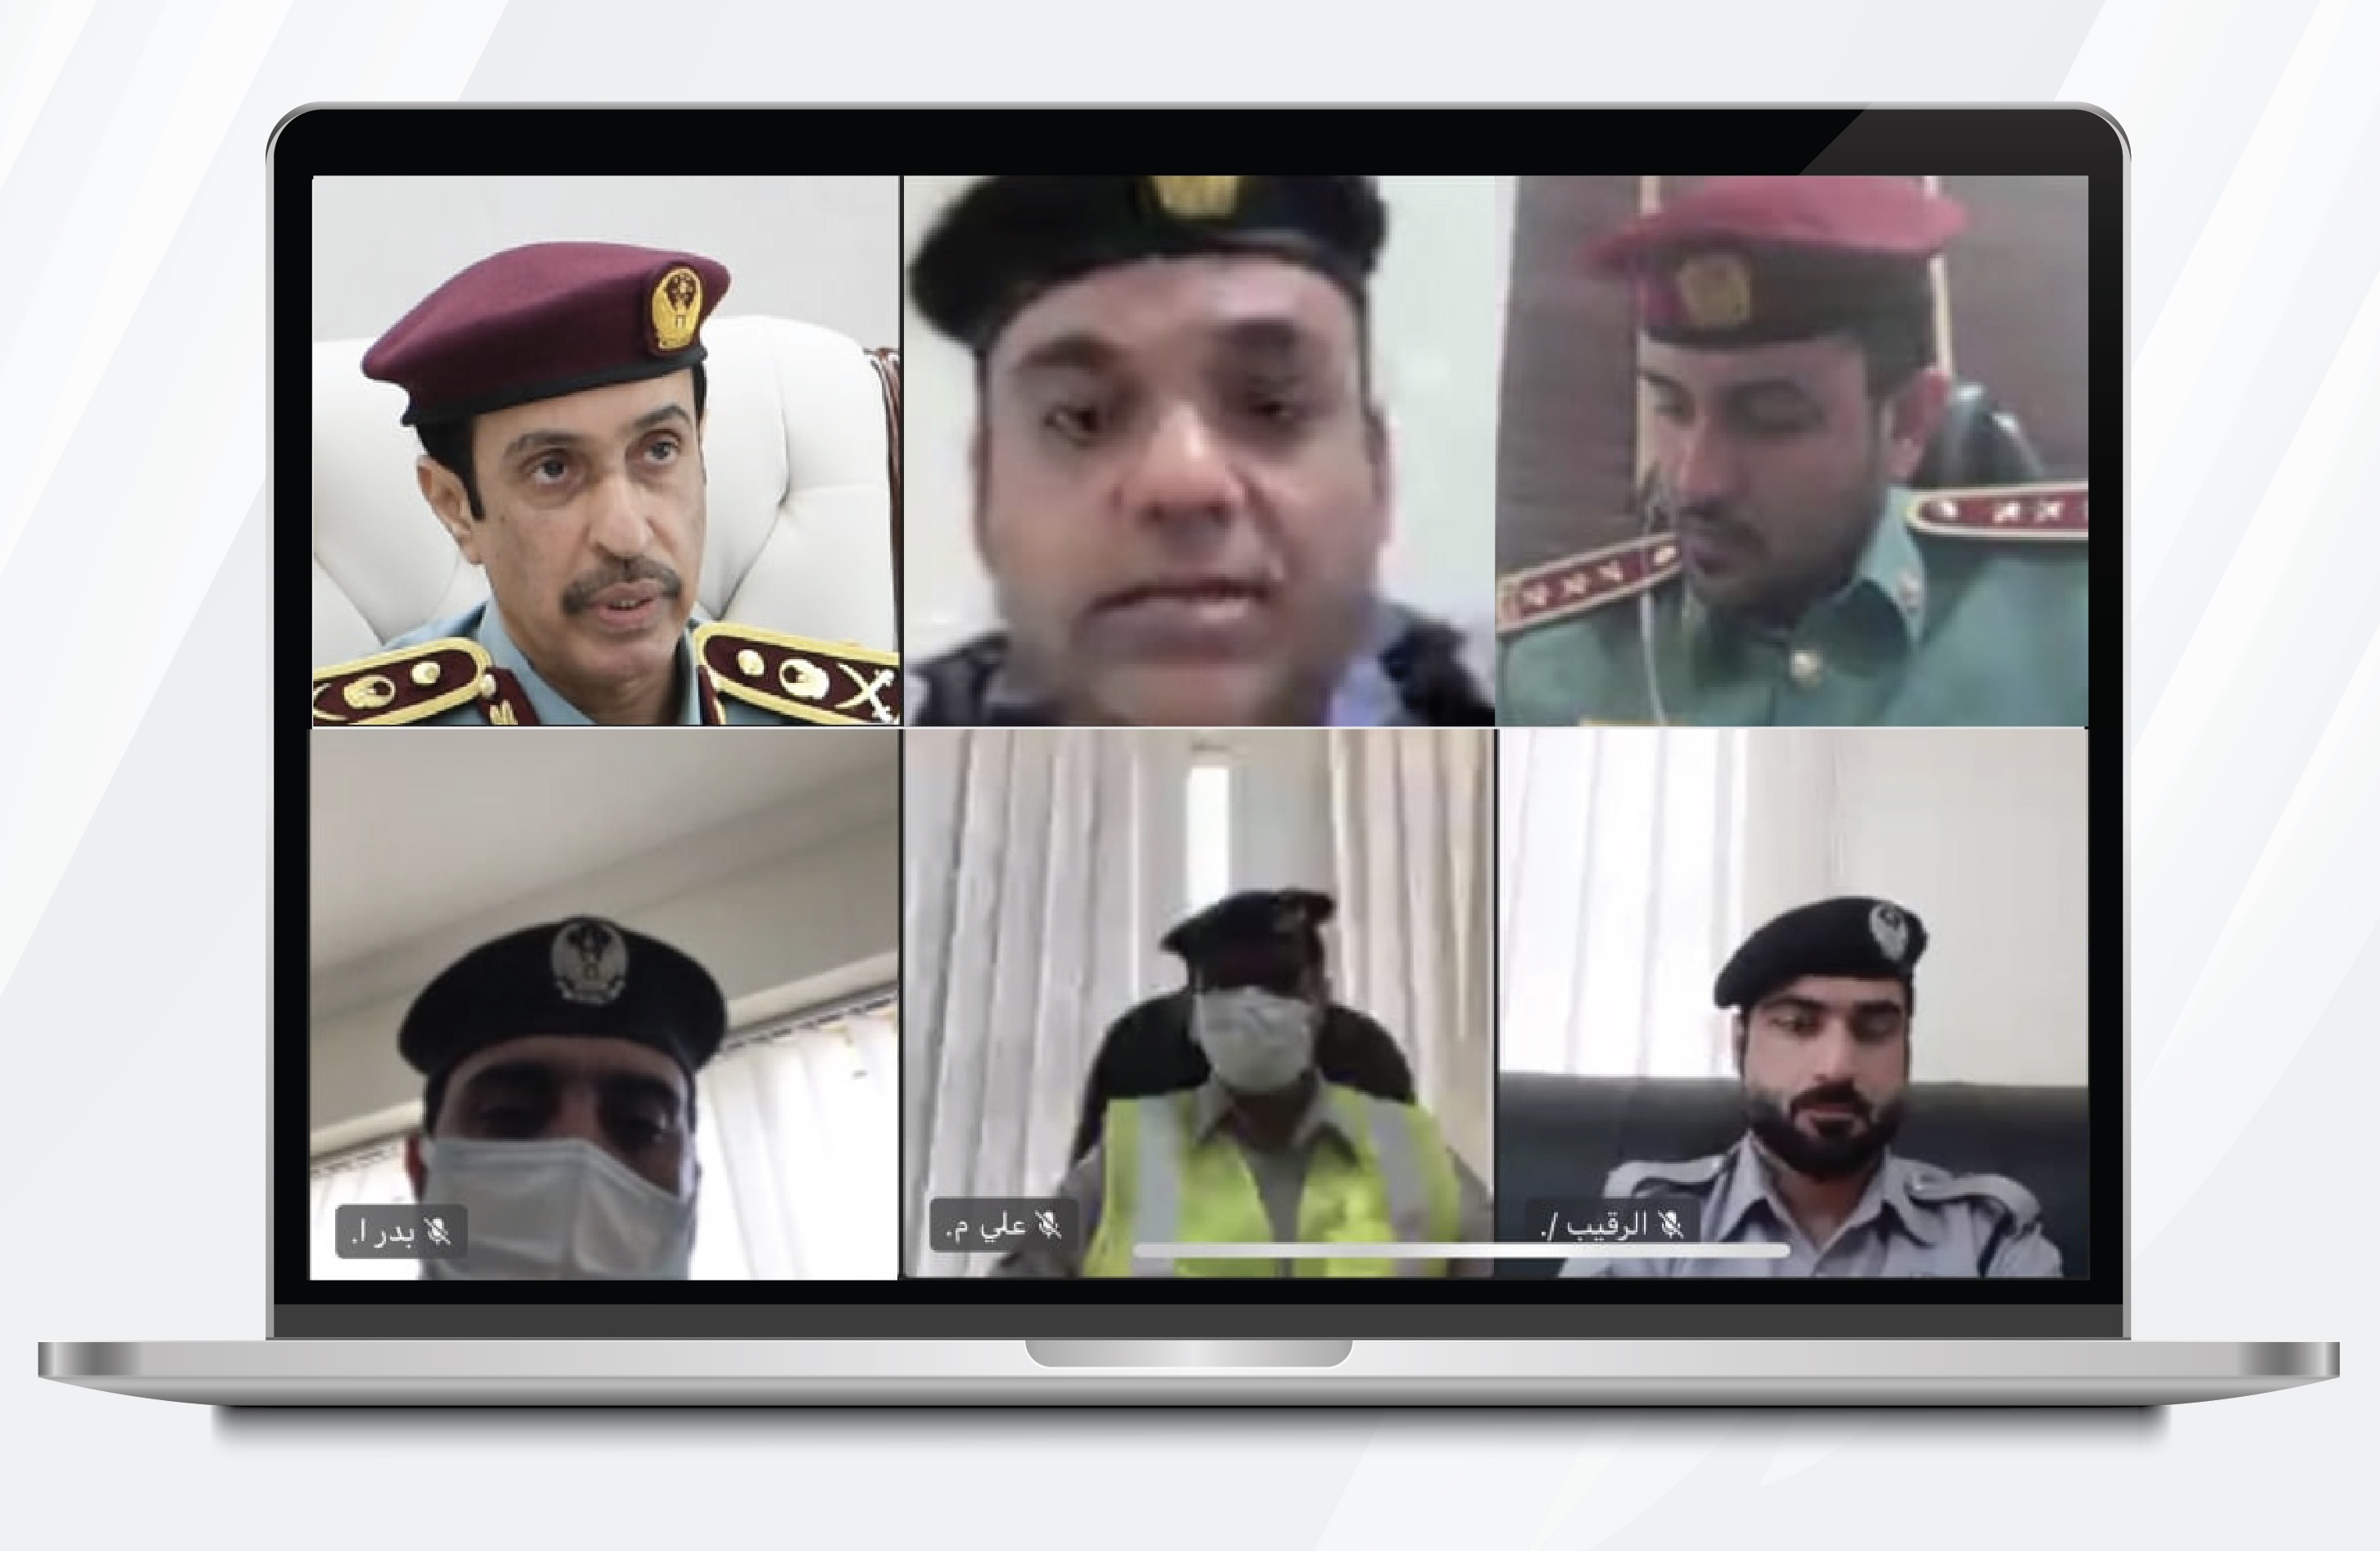 قائد عام شرطة عجمان يستضيف الموظفين في مبادرة ساعة مع القائد ويستمع إلى مقترحاتهم